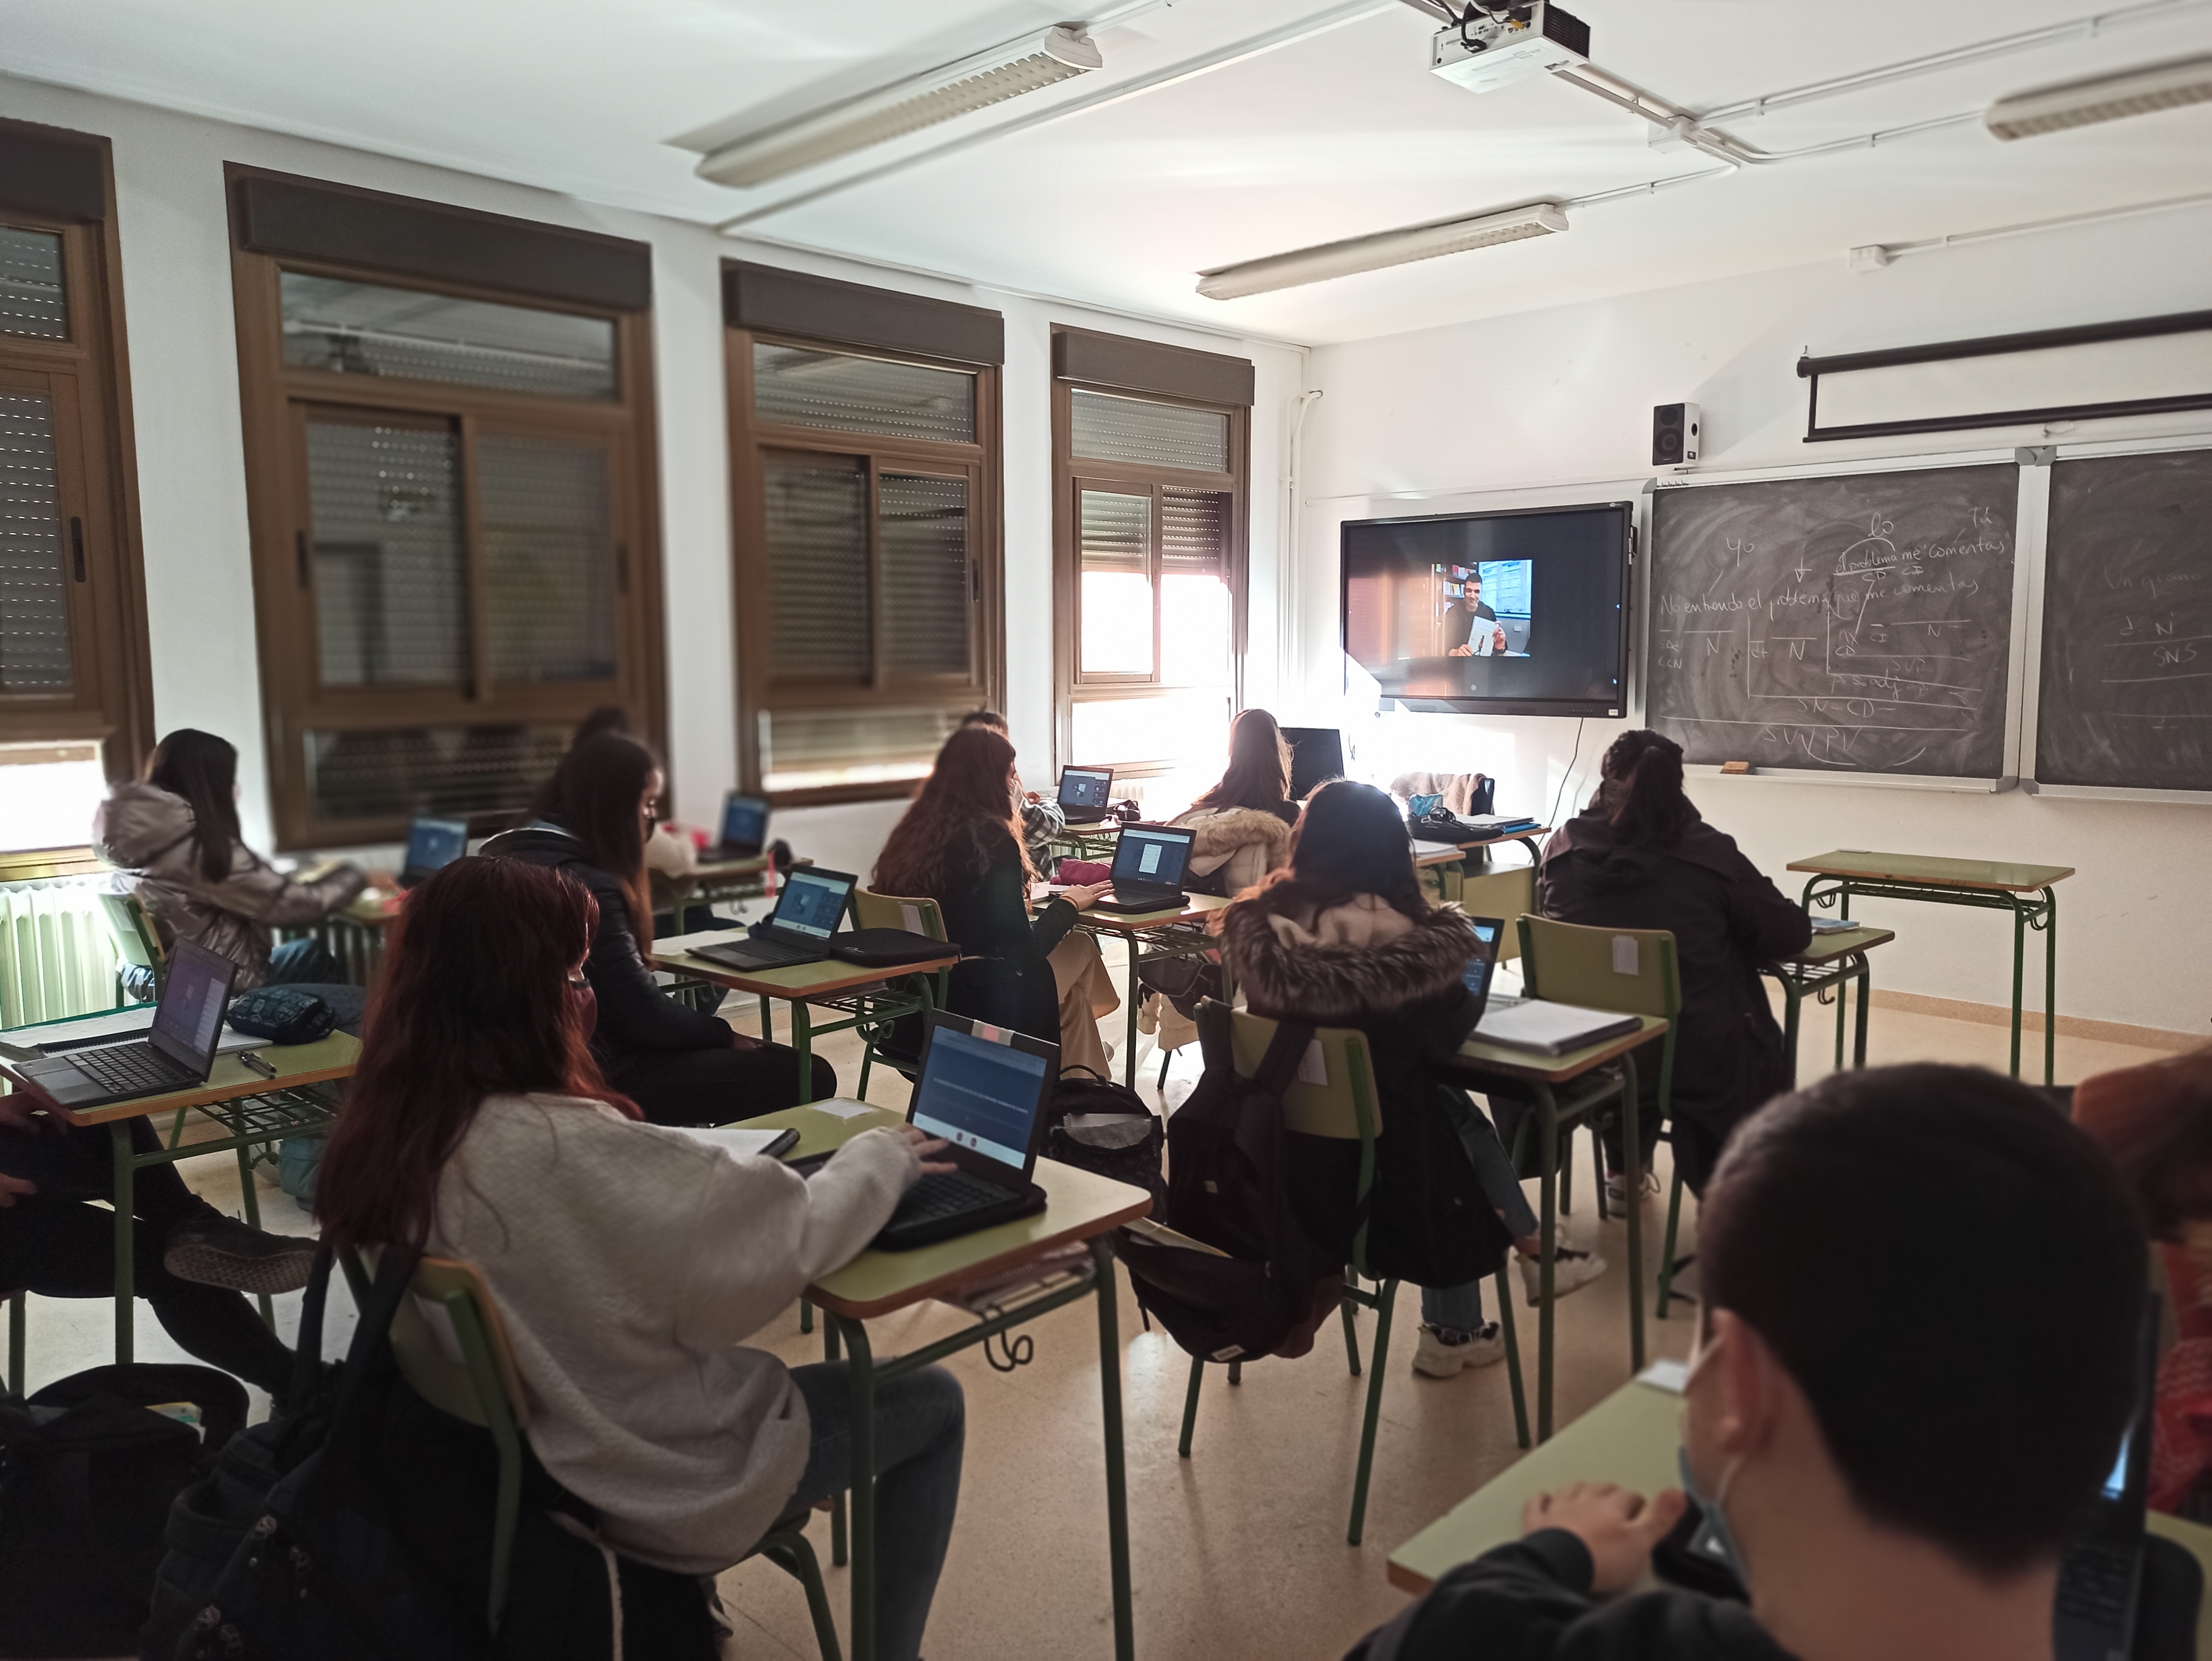 El alumnado de 4º de la ESO del IES Valle del Ebro, disfrutó de un encuentro virtual el pasado 14 de enero con el escritor Eloy Moreno.